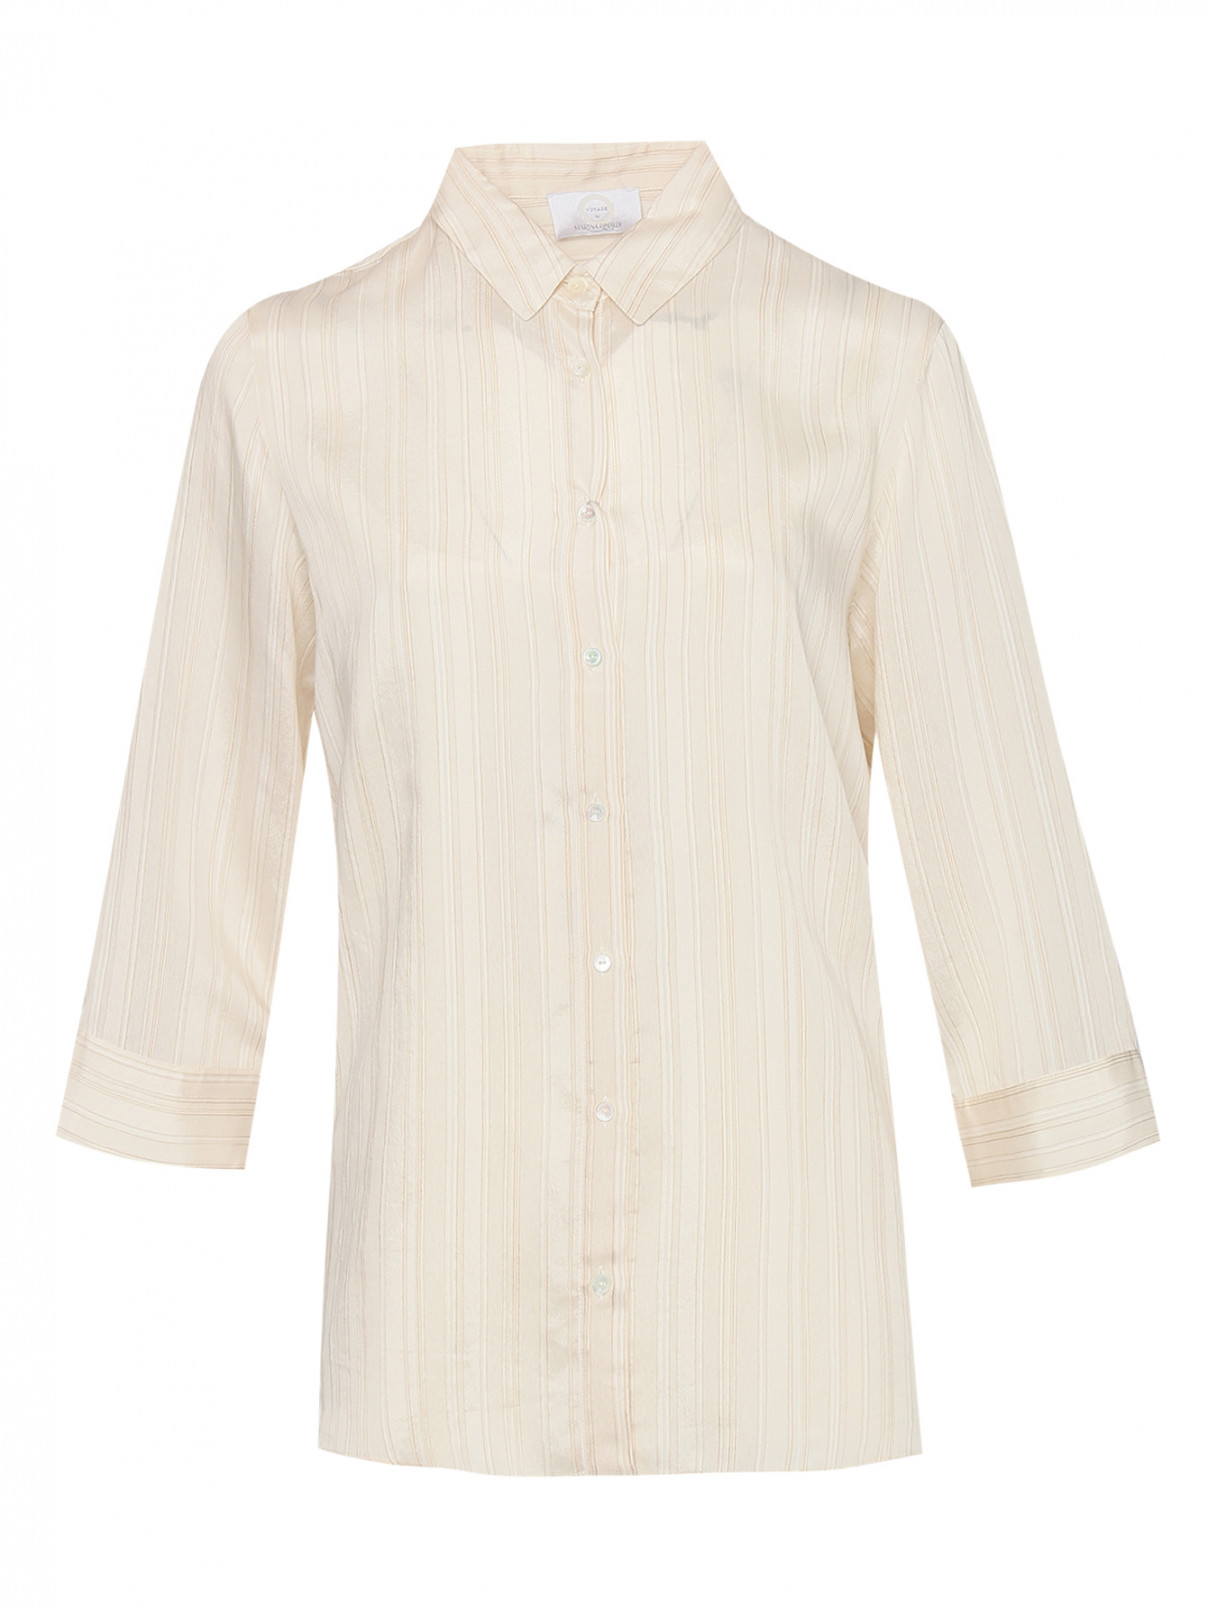 Блуза из вискозы и шелка в полоску Marina Rinaldi  –  Общий вид  – Цвет:  Бежевый